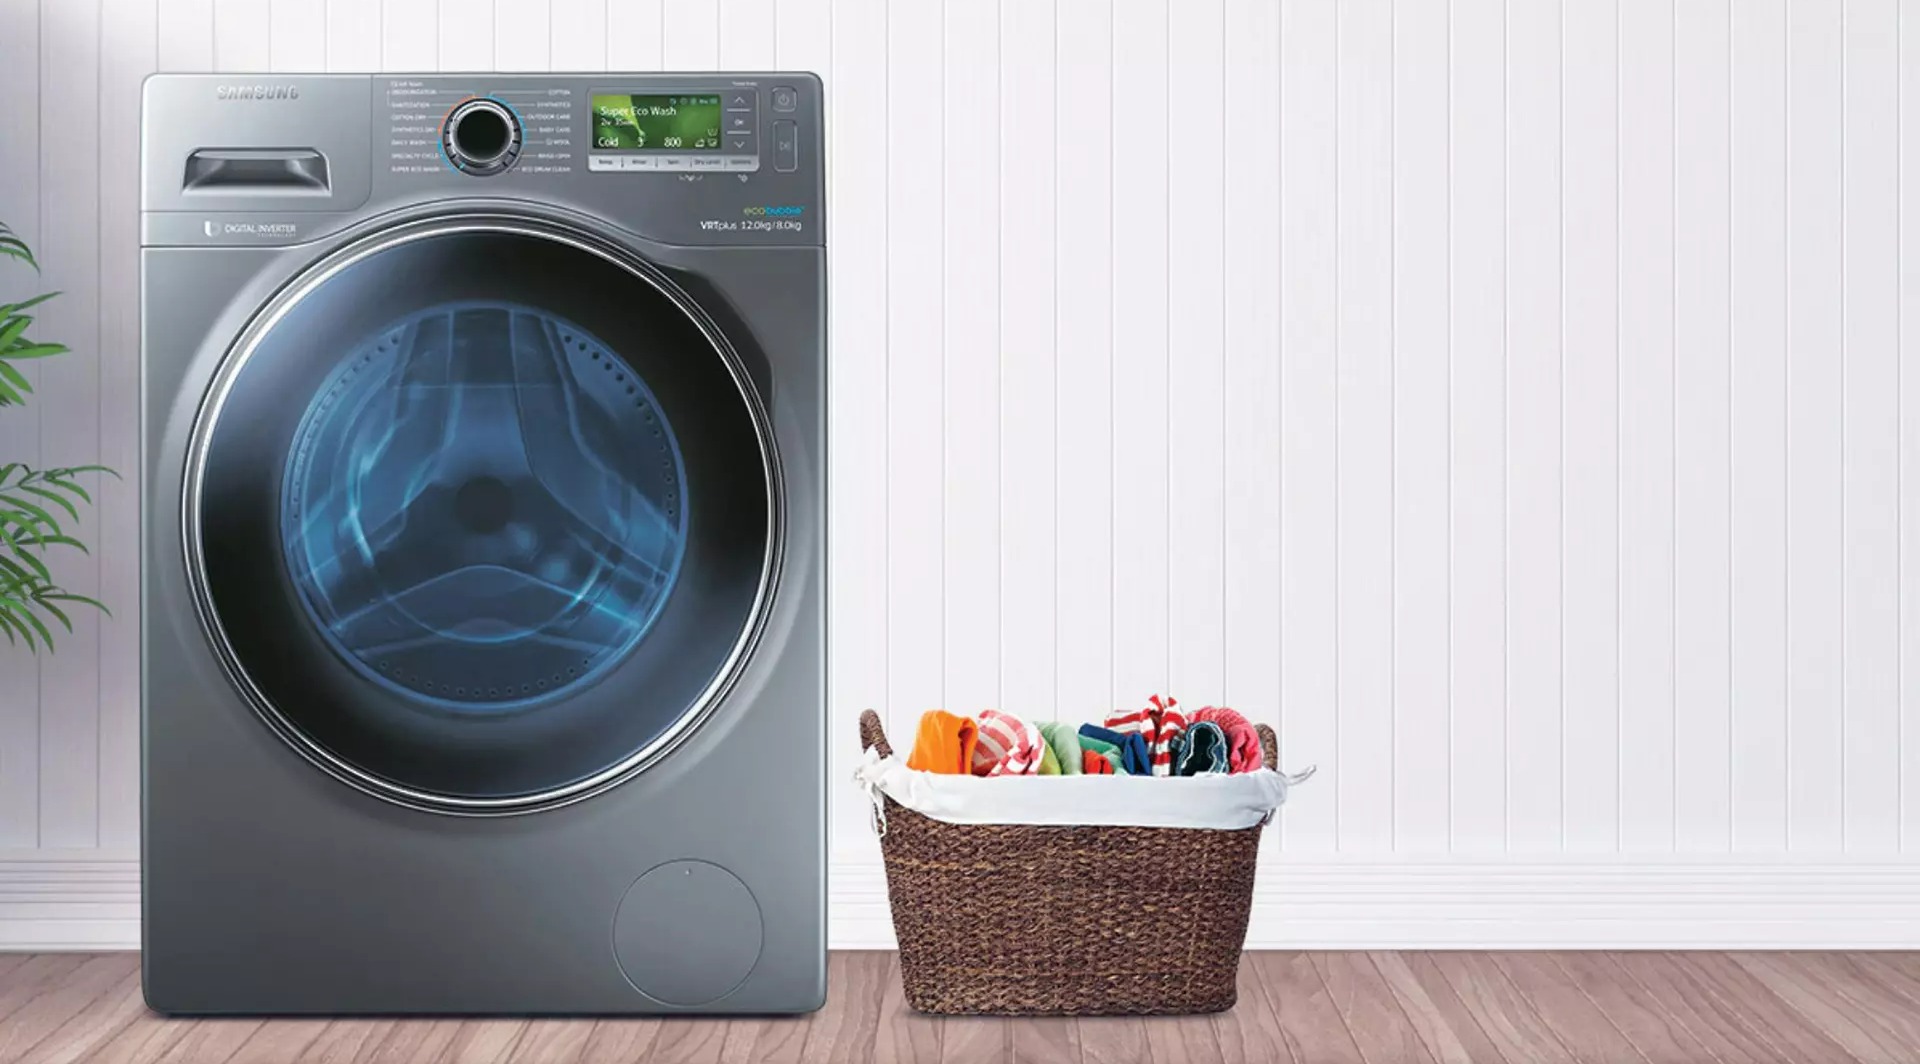 لباس در لباسشویی - دمای آب مناسب ماشین لباسشویی